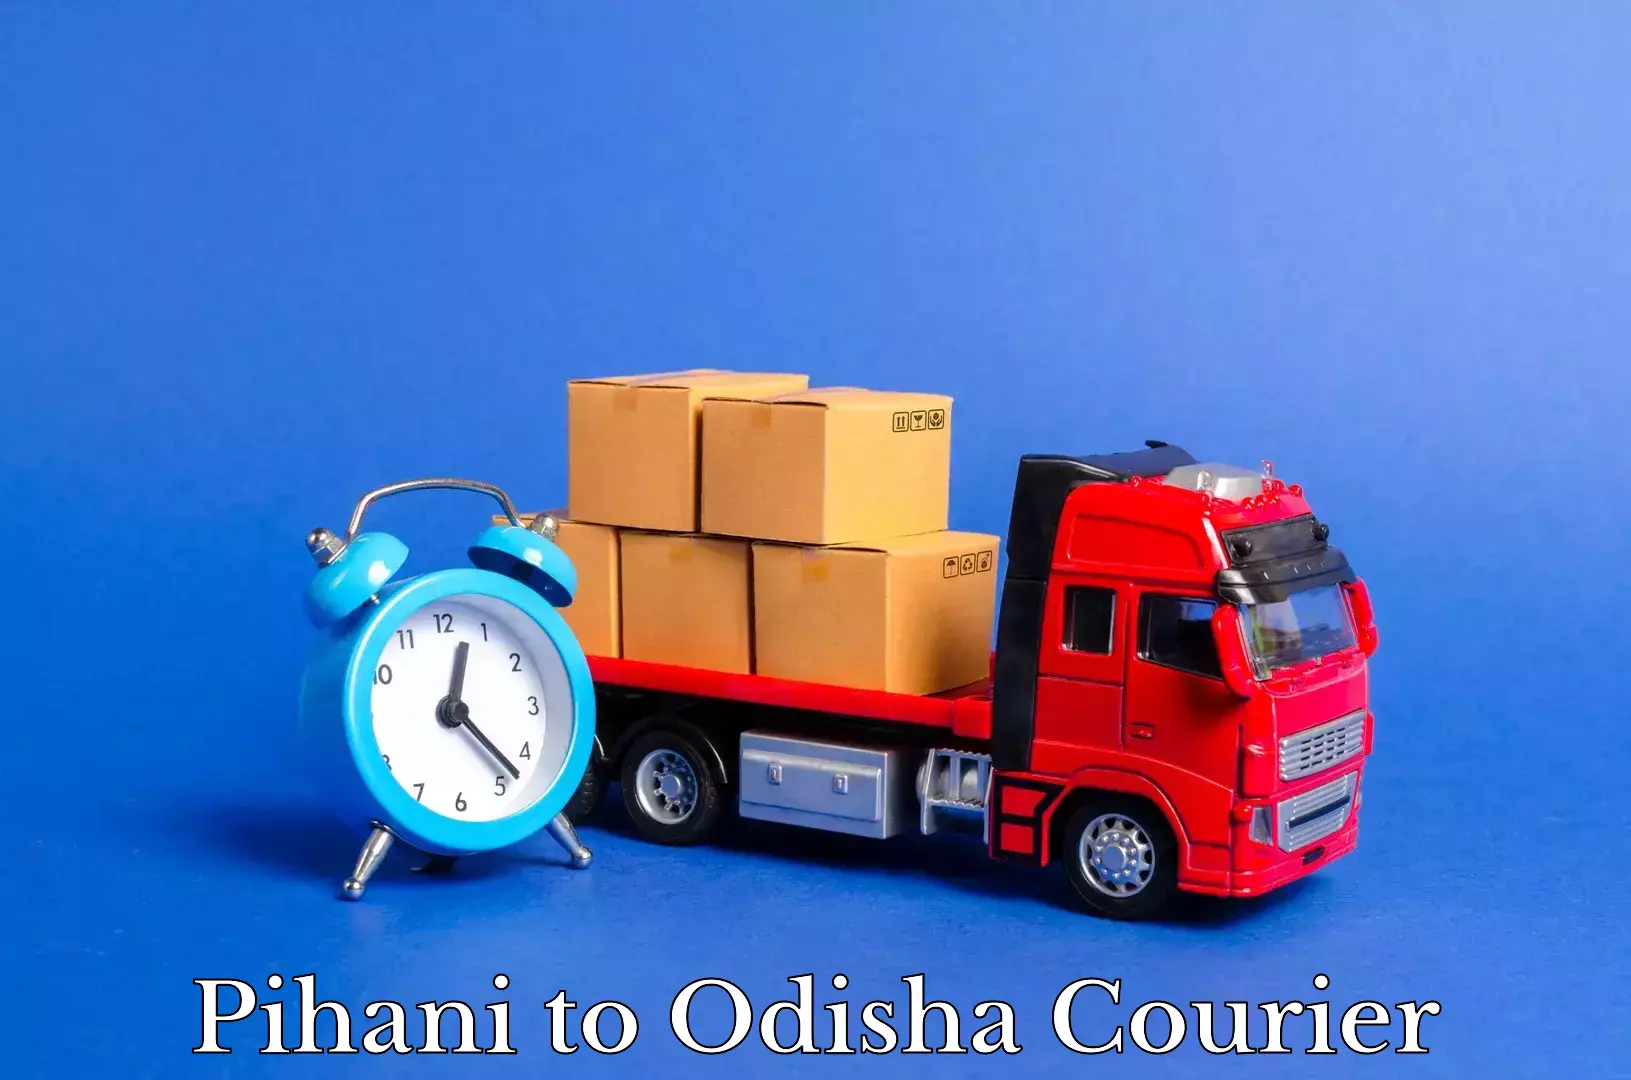 Skilled furniture transporters Pihani to Odisha